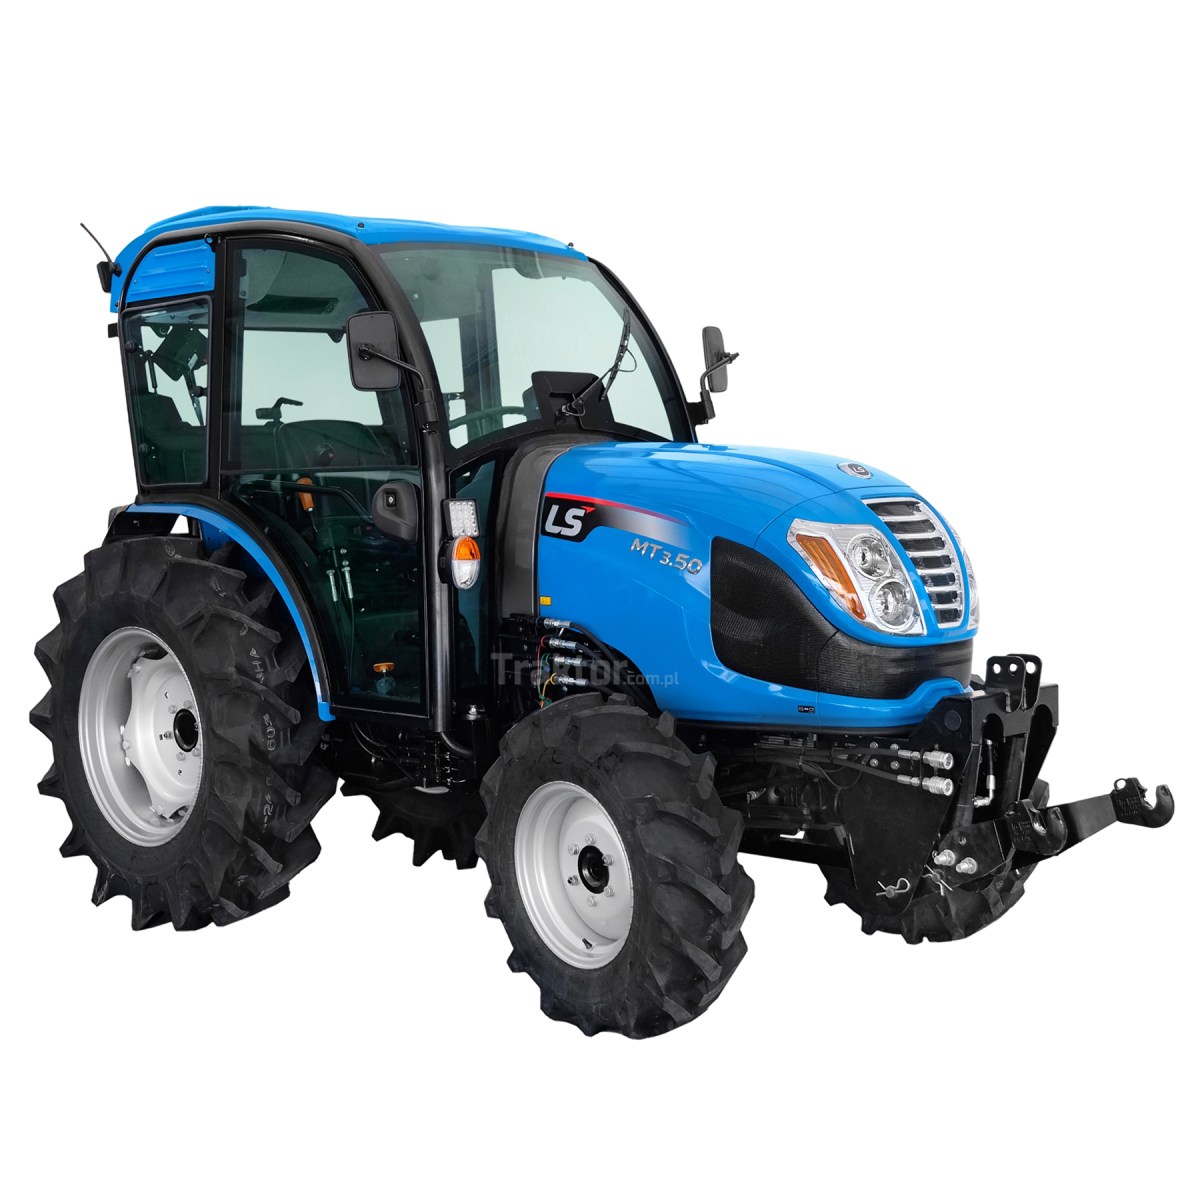 LS Tractor MT3.50 MEC 4x4 - 47 KM / CAB z klimatyzacją + przedni TUZ do traktora Premium 4FARMER